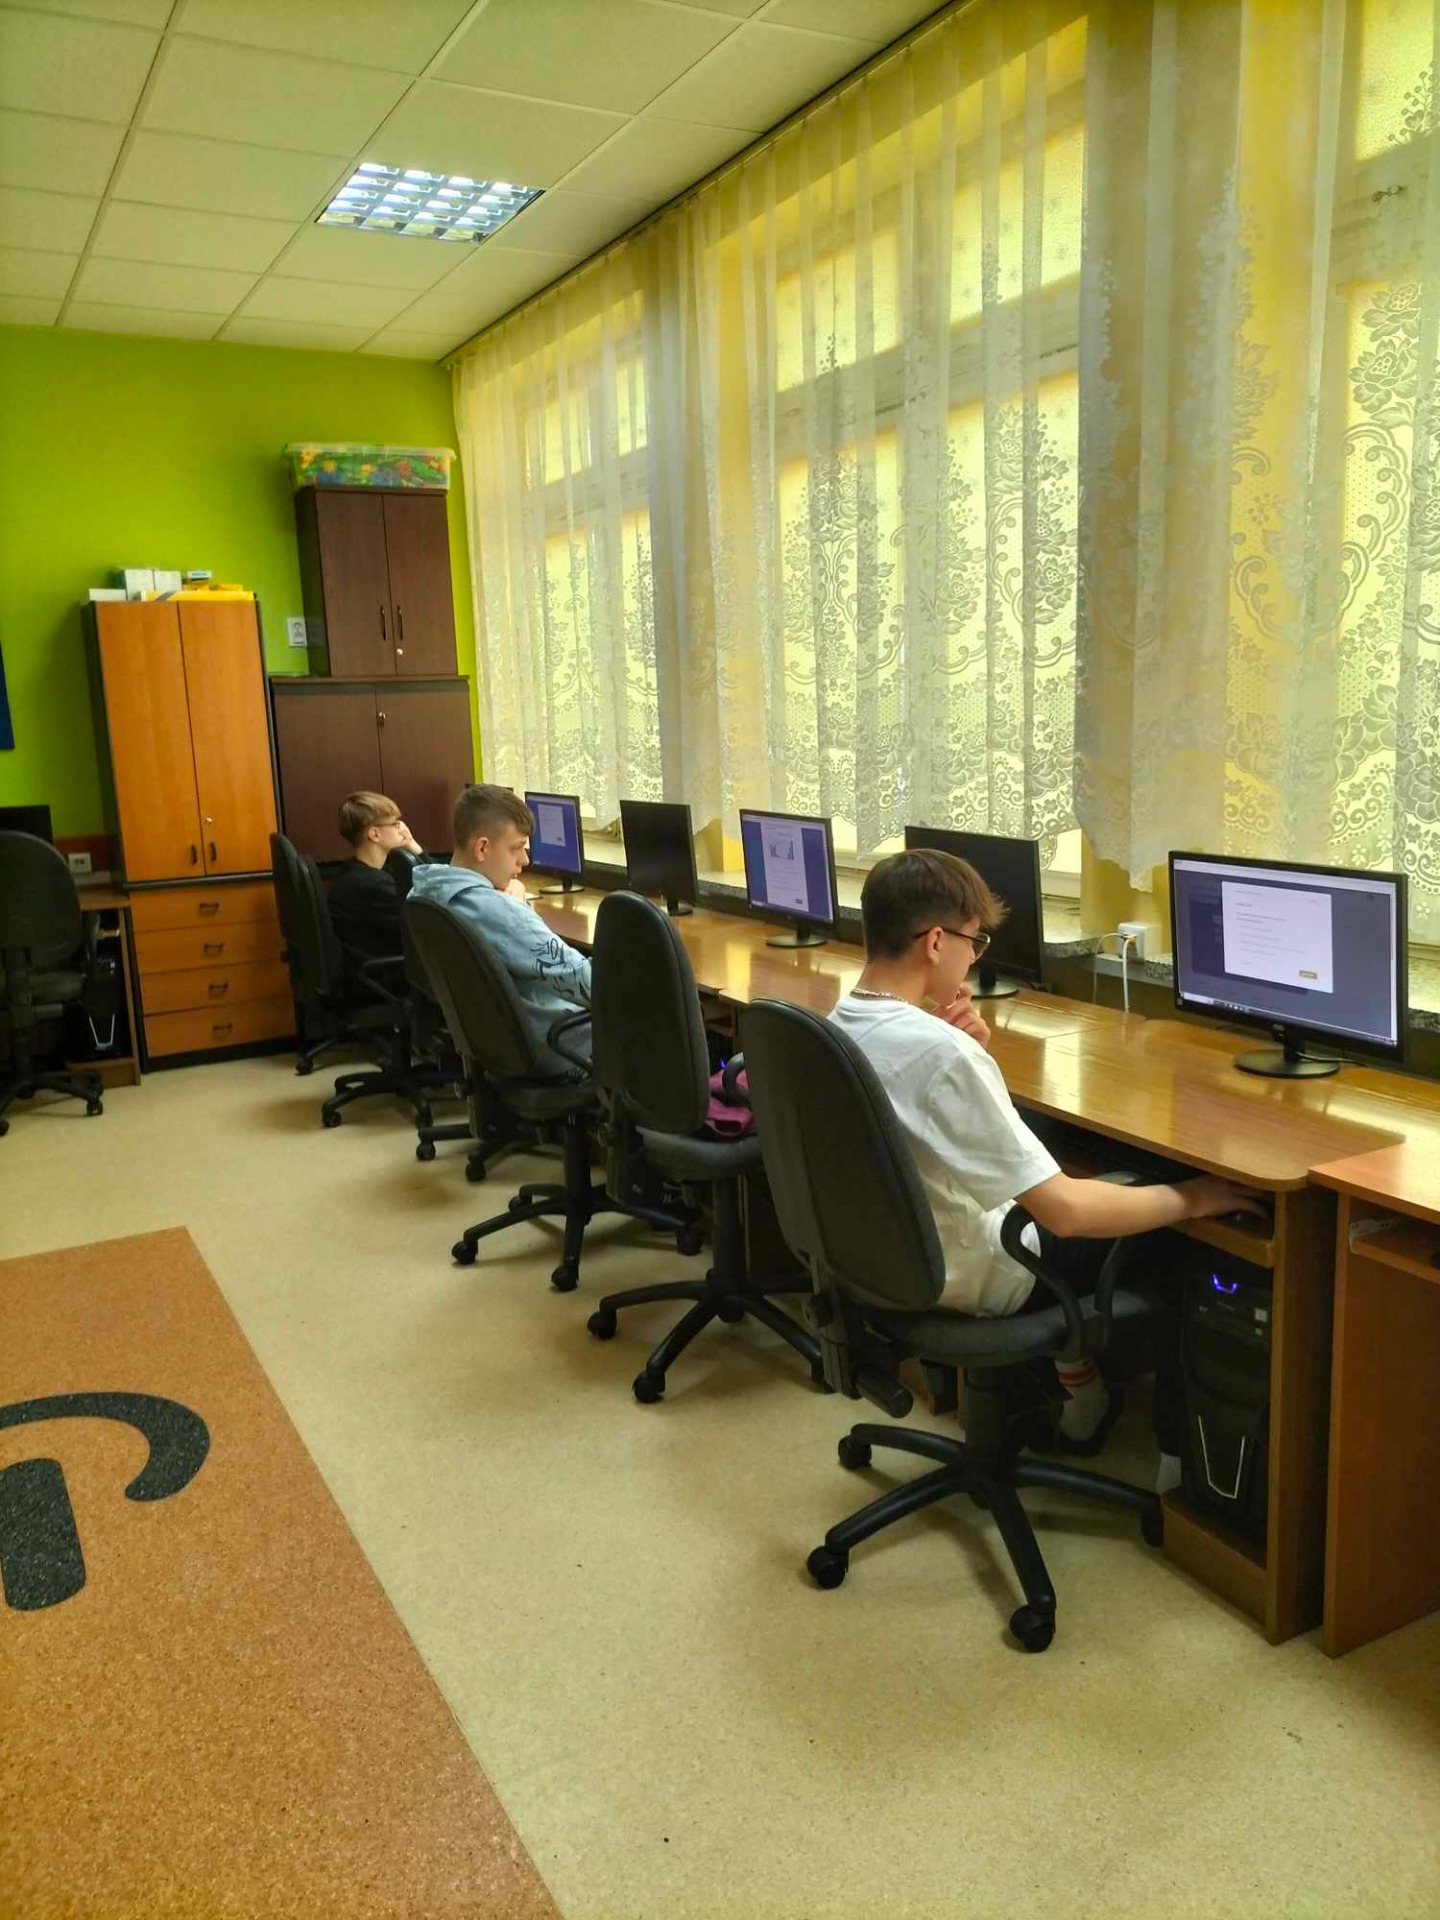 Uczniowie w pracowni komputerowej rozwiązują test konkursowy online.